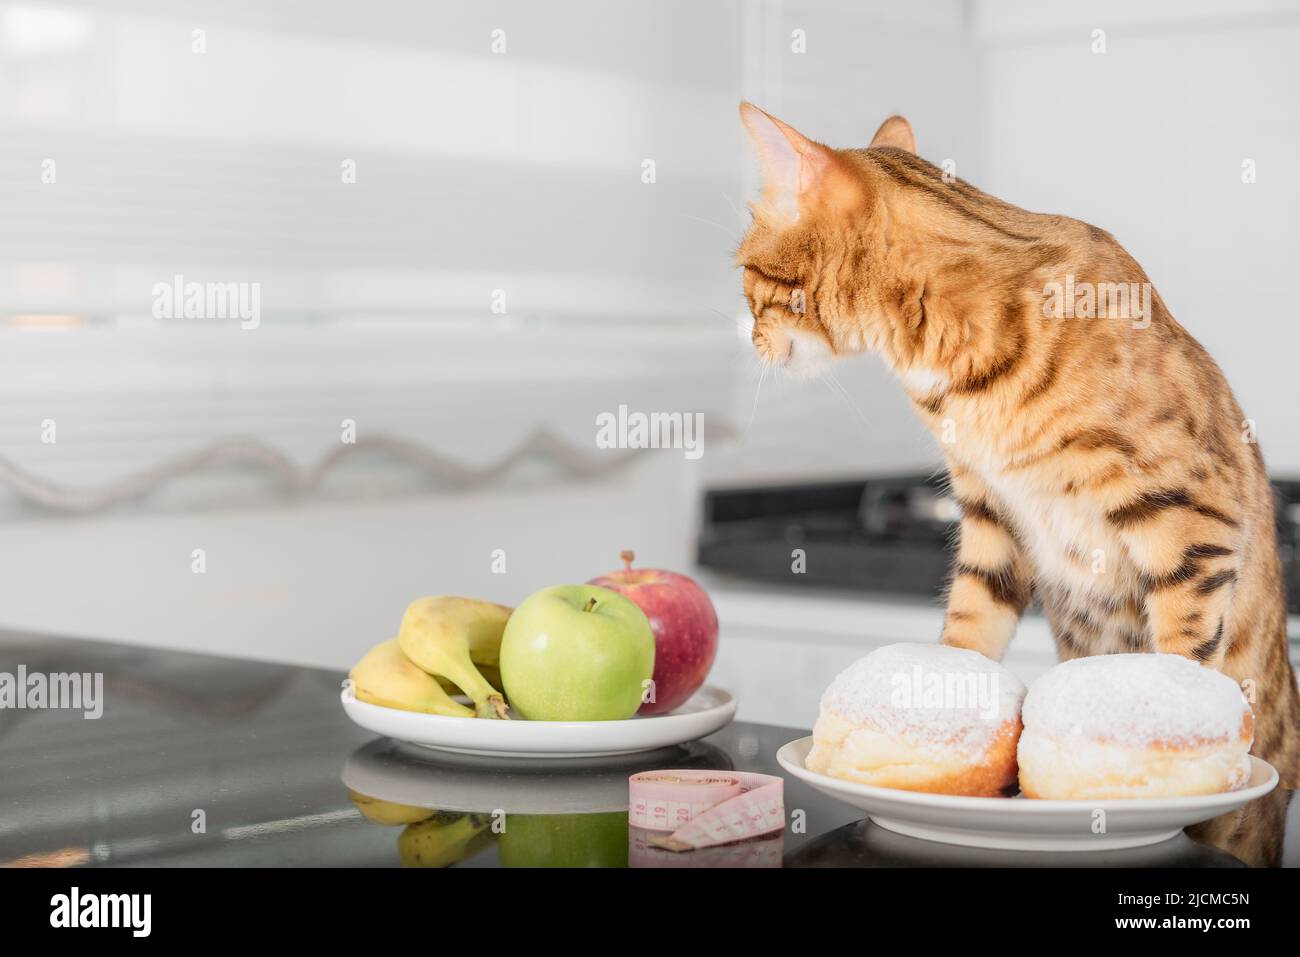 Il concetto di una dieta sana, la scelta di un gatto tra frutta sana e una ciambella ad alto contenuto calorico. Spazio di copia. Foto Stock